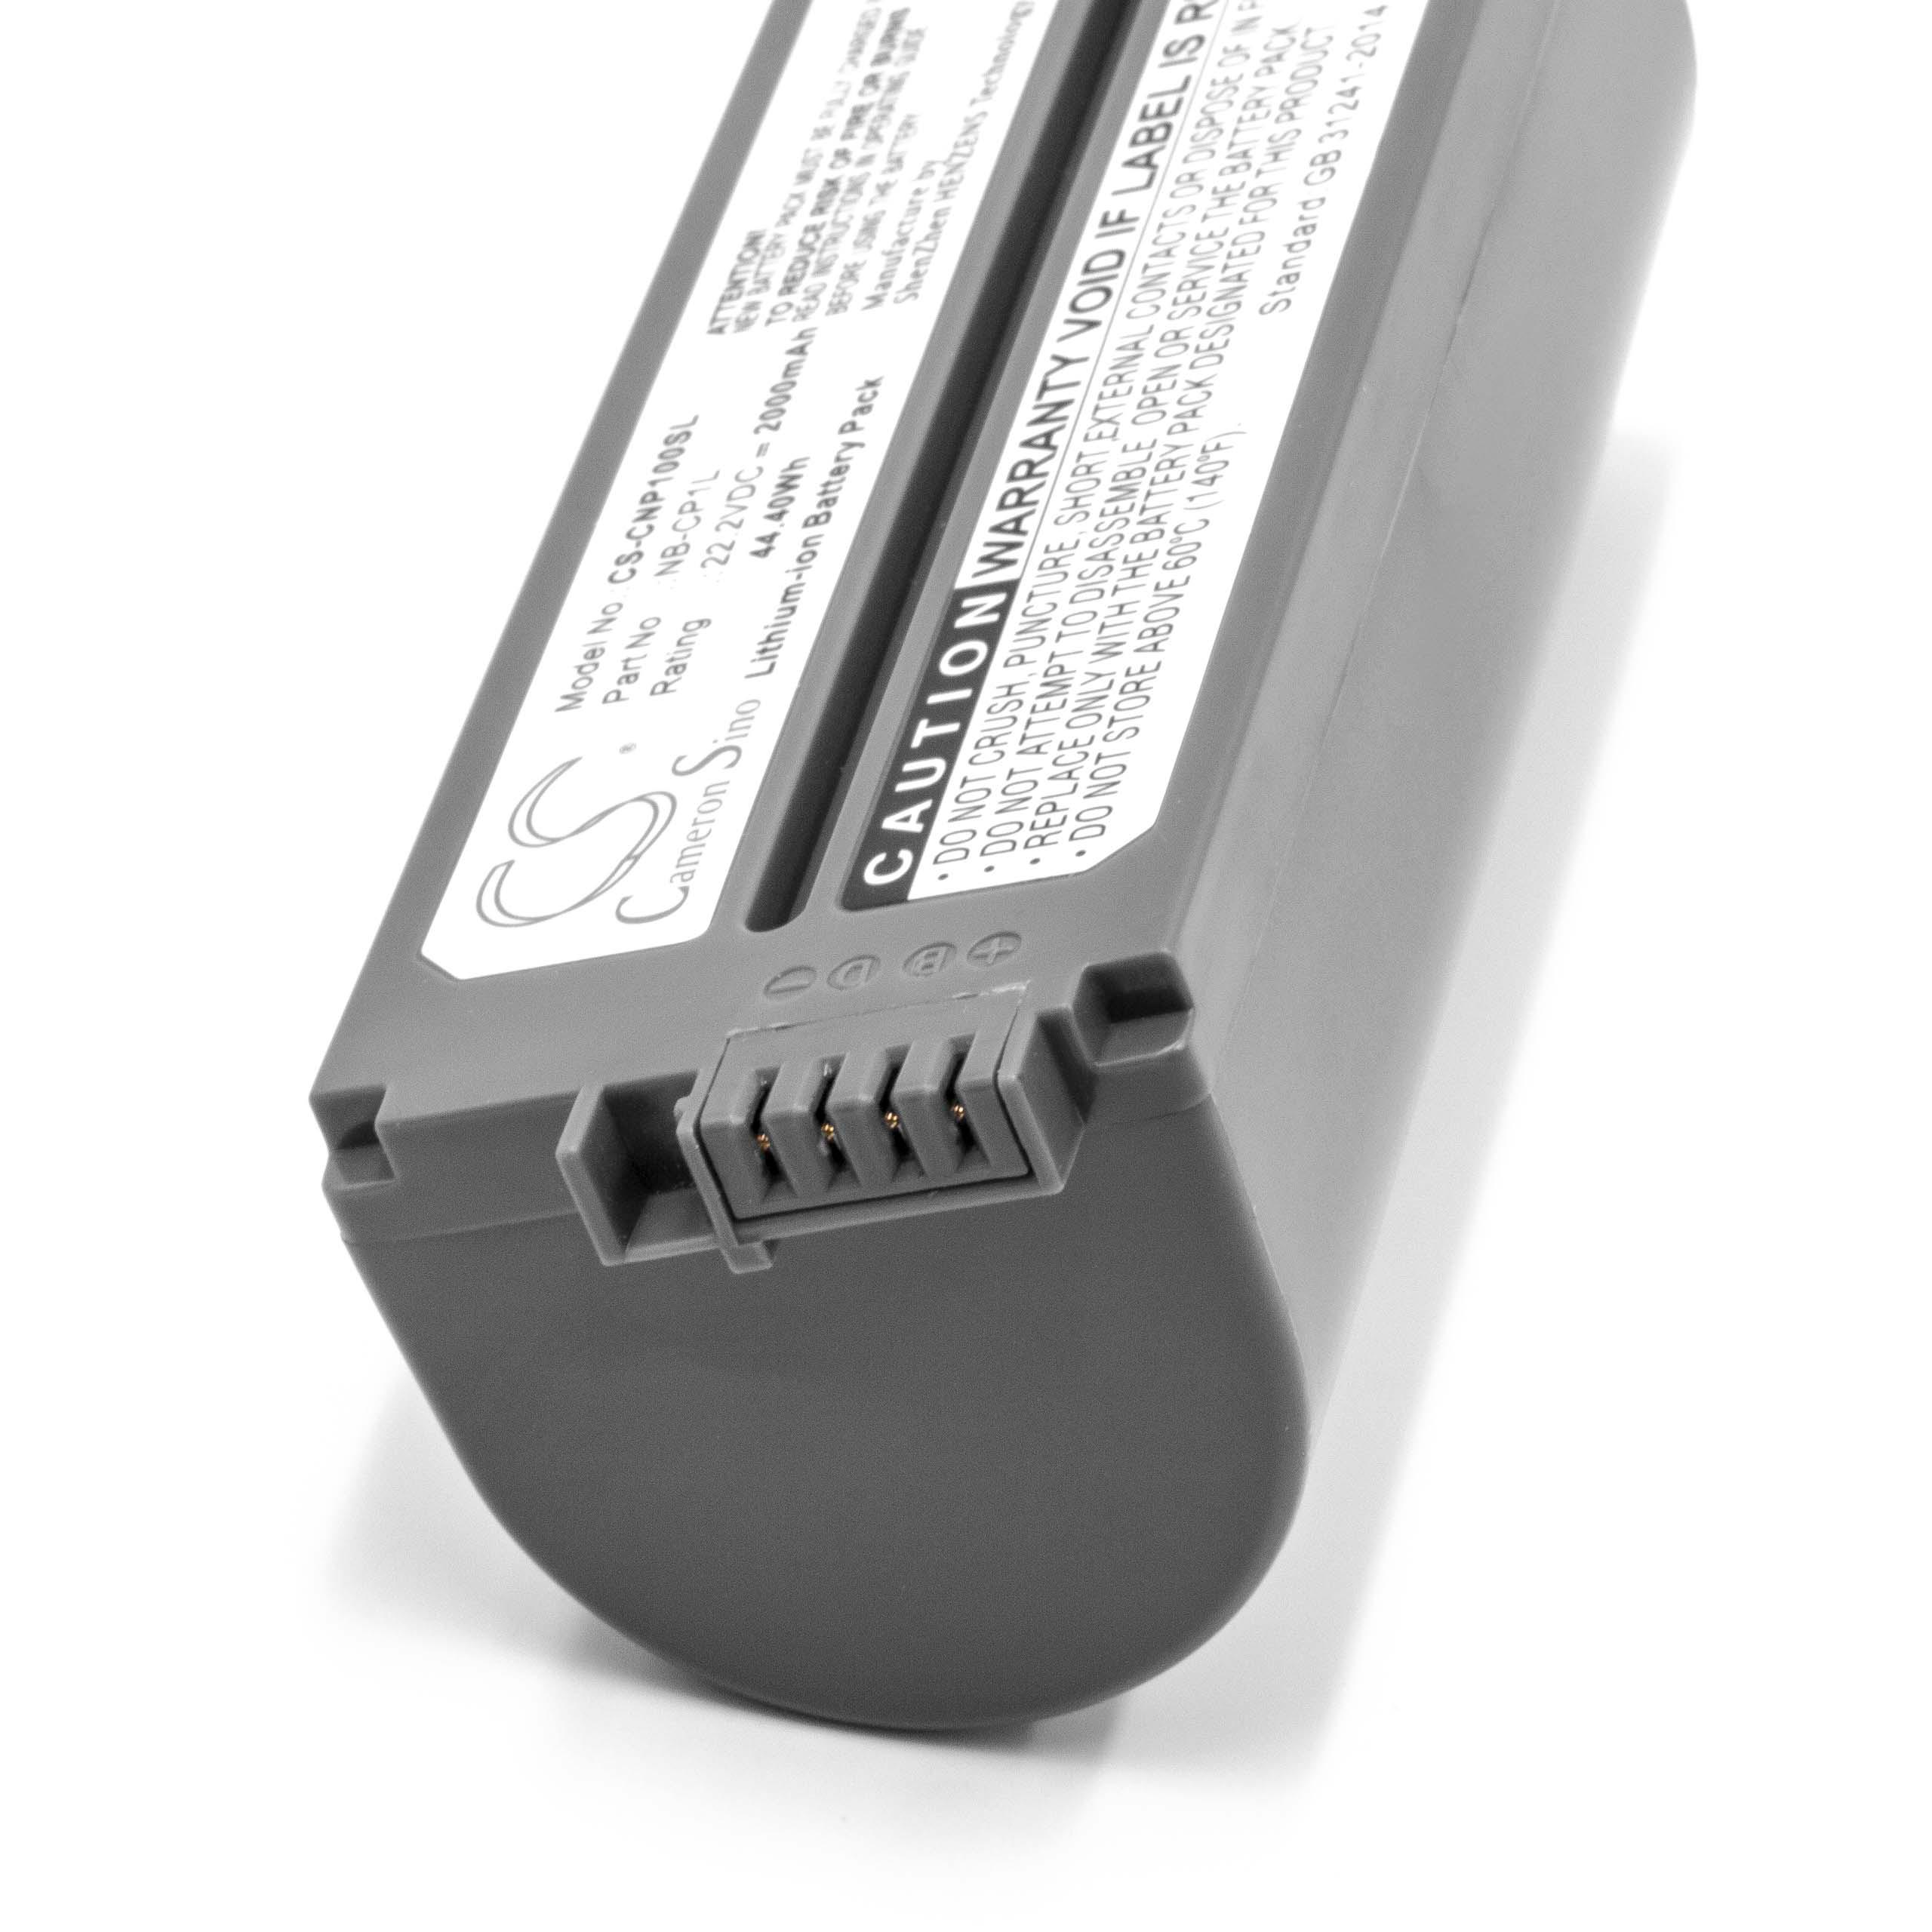 Printer Battery Replacement for Canon NB-CP2L, NB-CP1L, CS-CP2L, CS-CP2, CP-2L - 2000mAh 22.2V Li-Ion